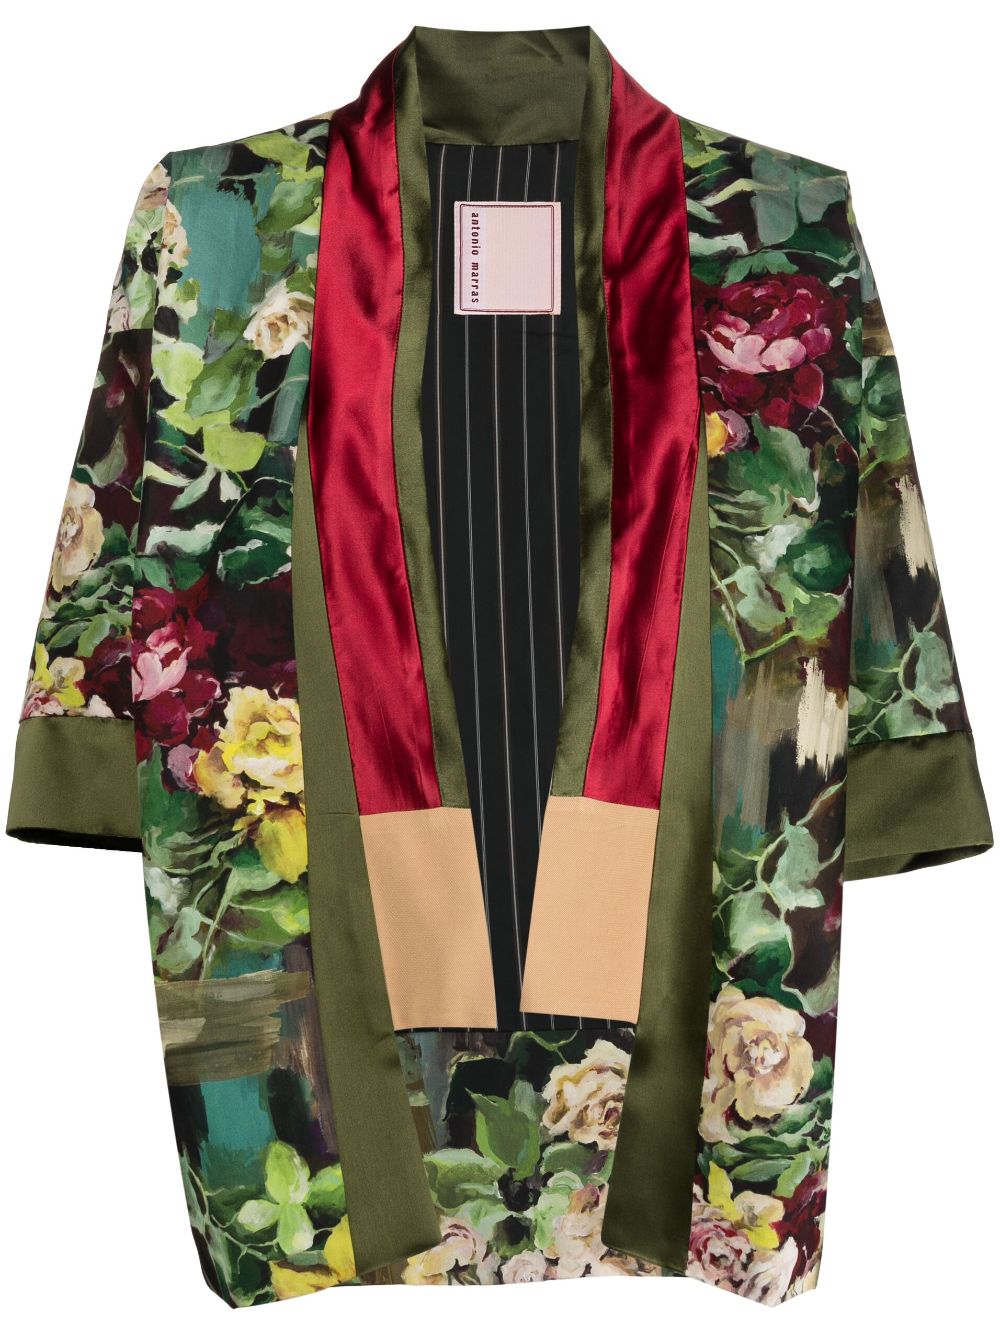 Antonio Marras Cleopatra F floral-print jacket